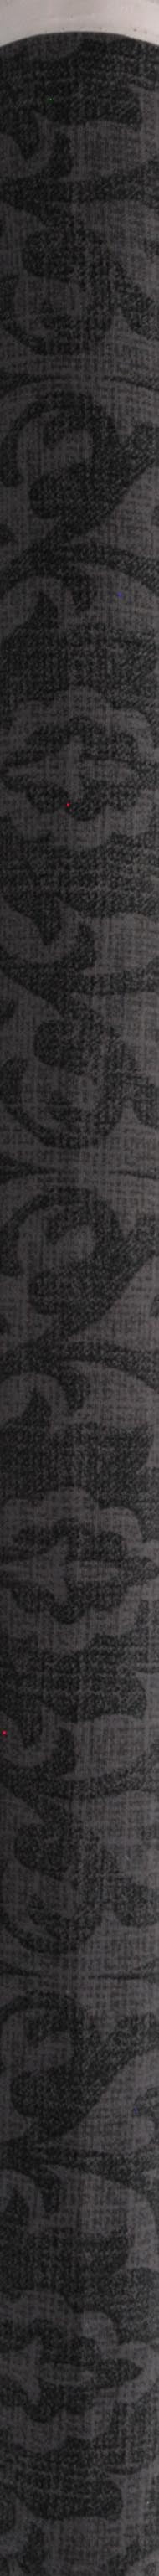 Waverly inspirációk pamut kacsa 54 damaszt fekete szövet, udvaronként